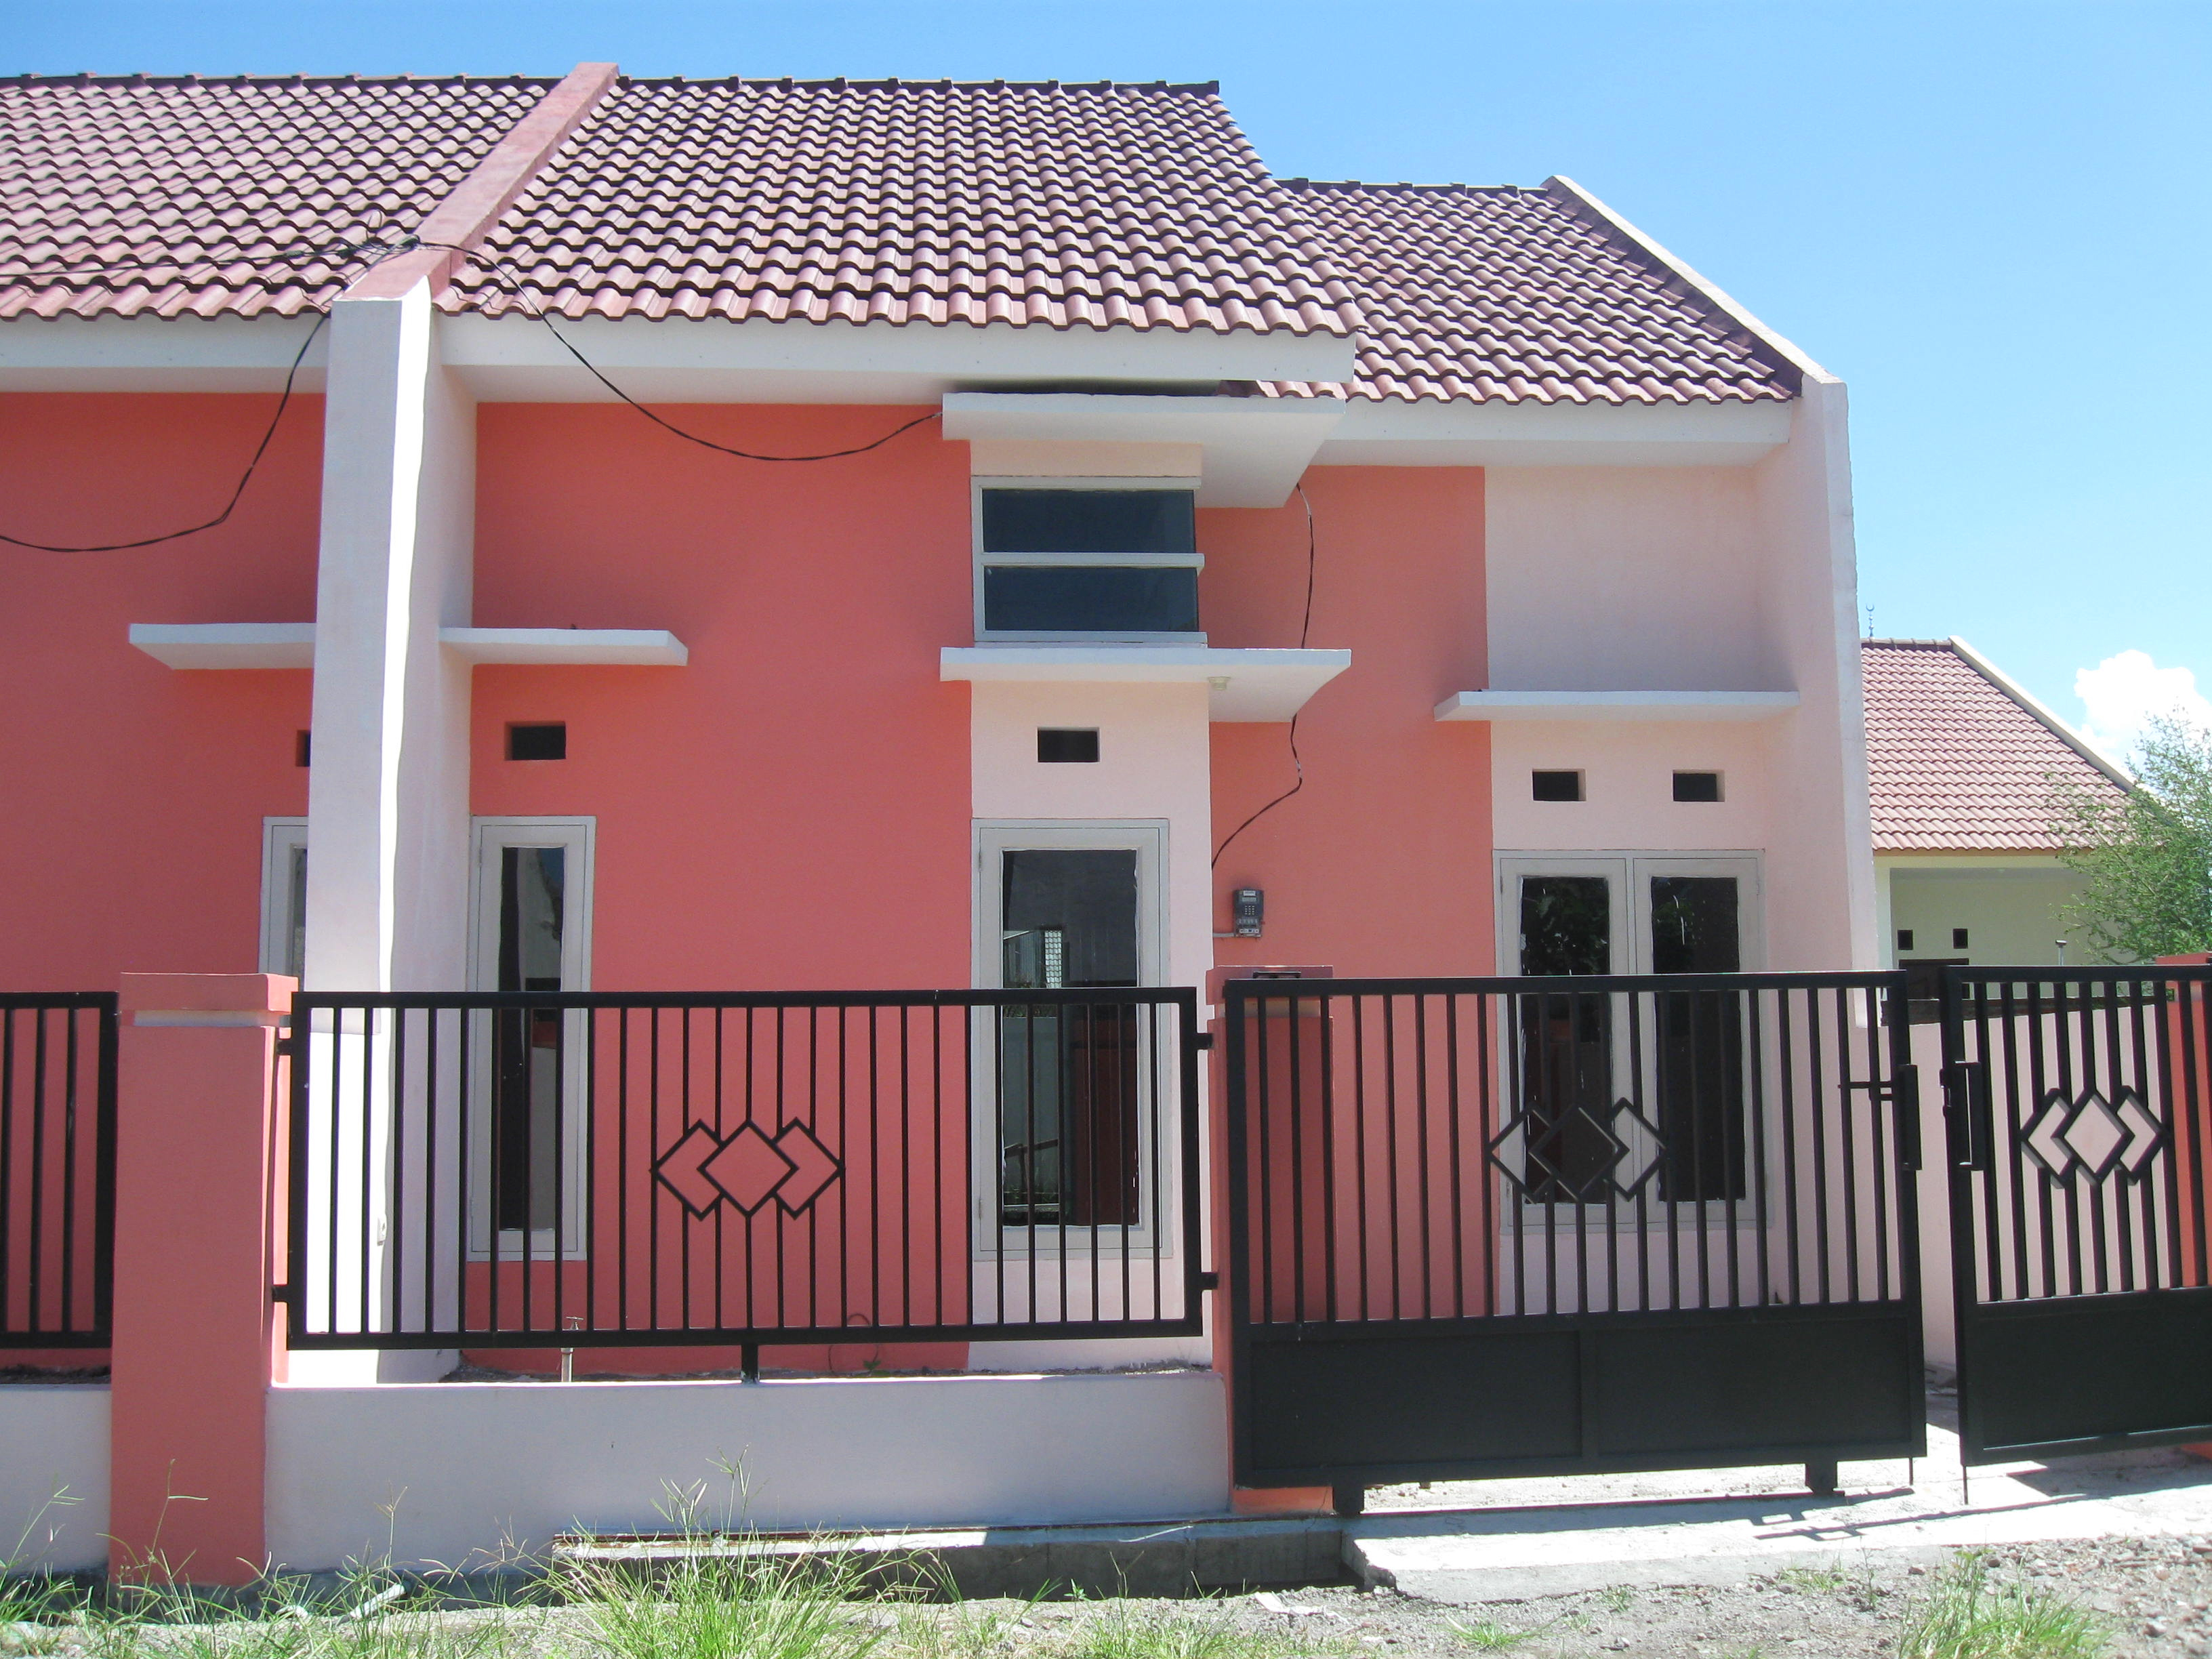 Harga Rumah Minimalis Type 36 Di Palembang Dshdesign4kinfo